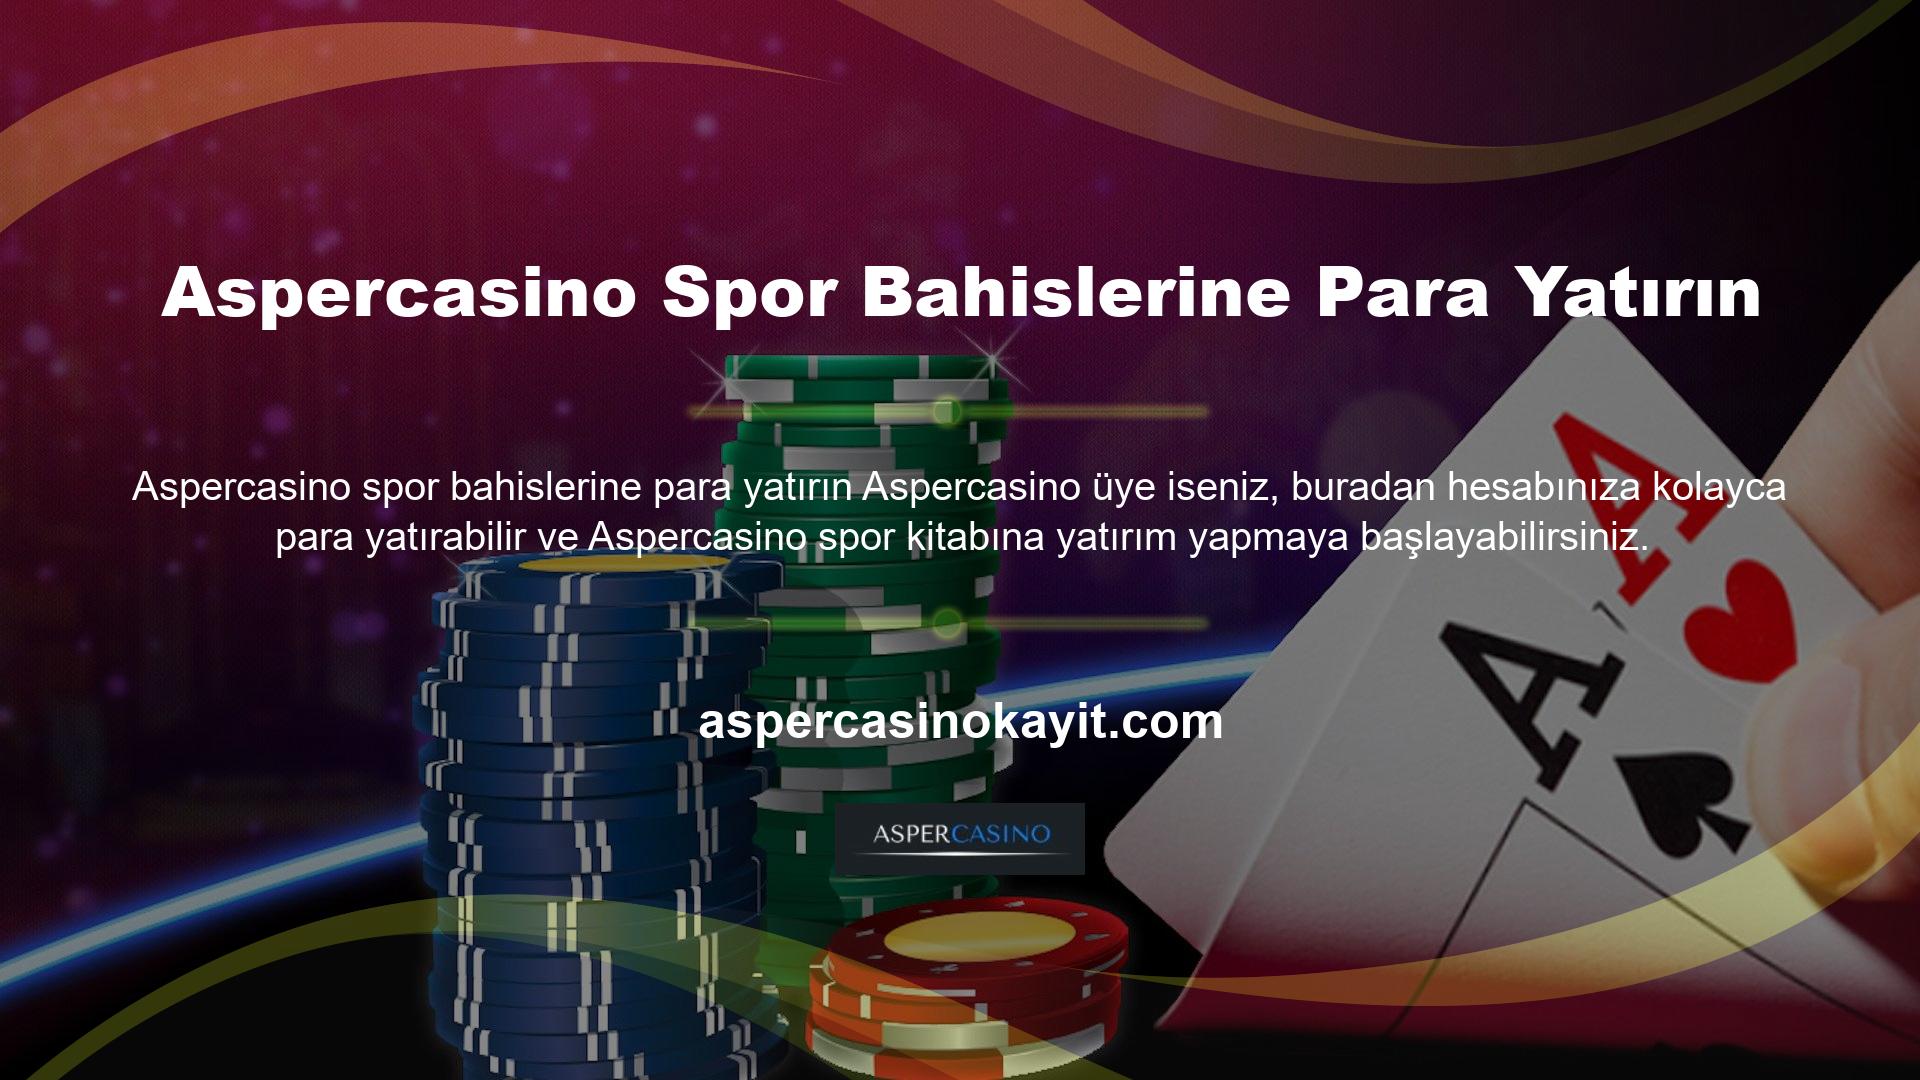 Aspercasino web sitesi, ticareti herkes için kolay ve sorunsuz hale getirmek için çeşitli yollar sunar